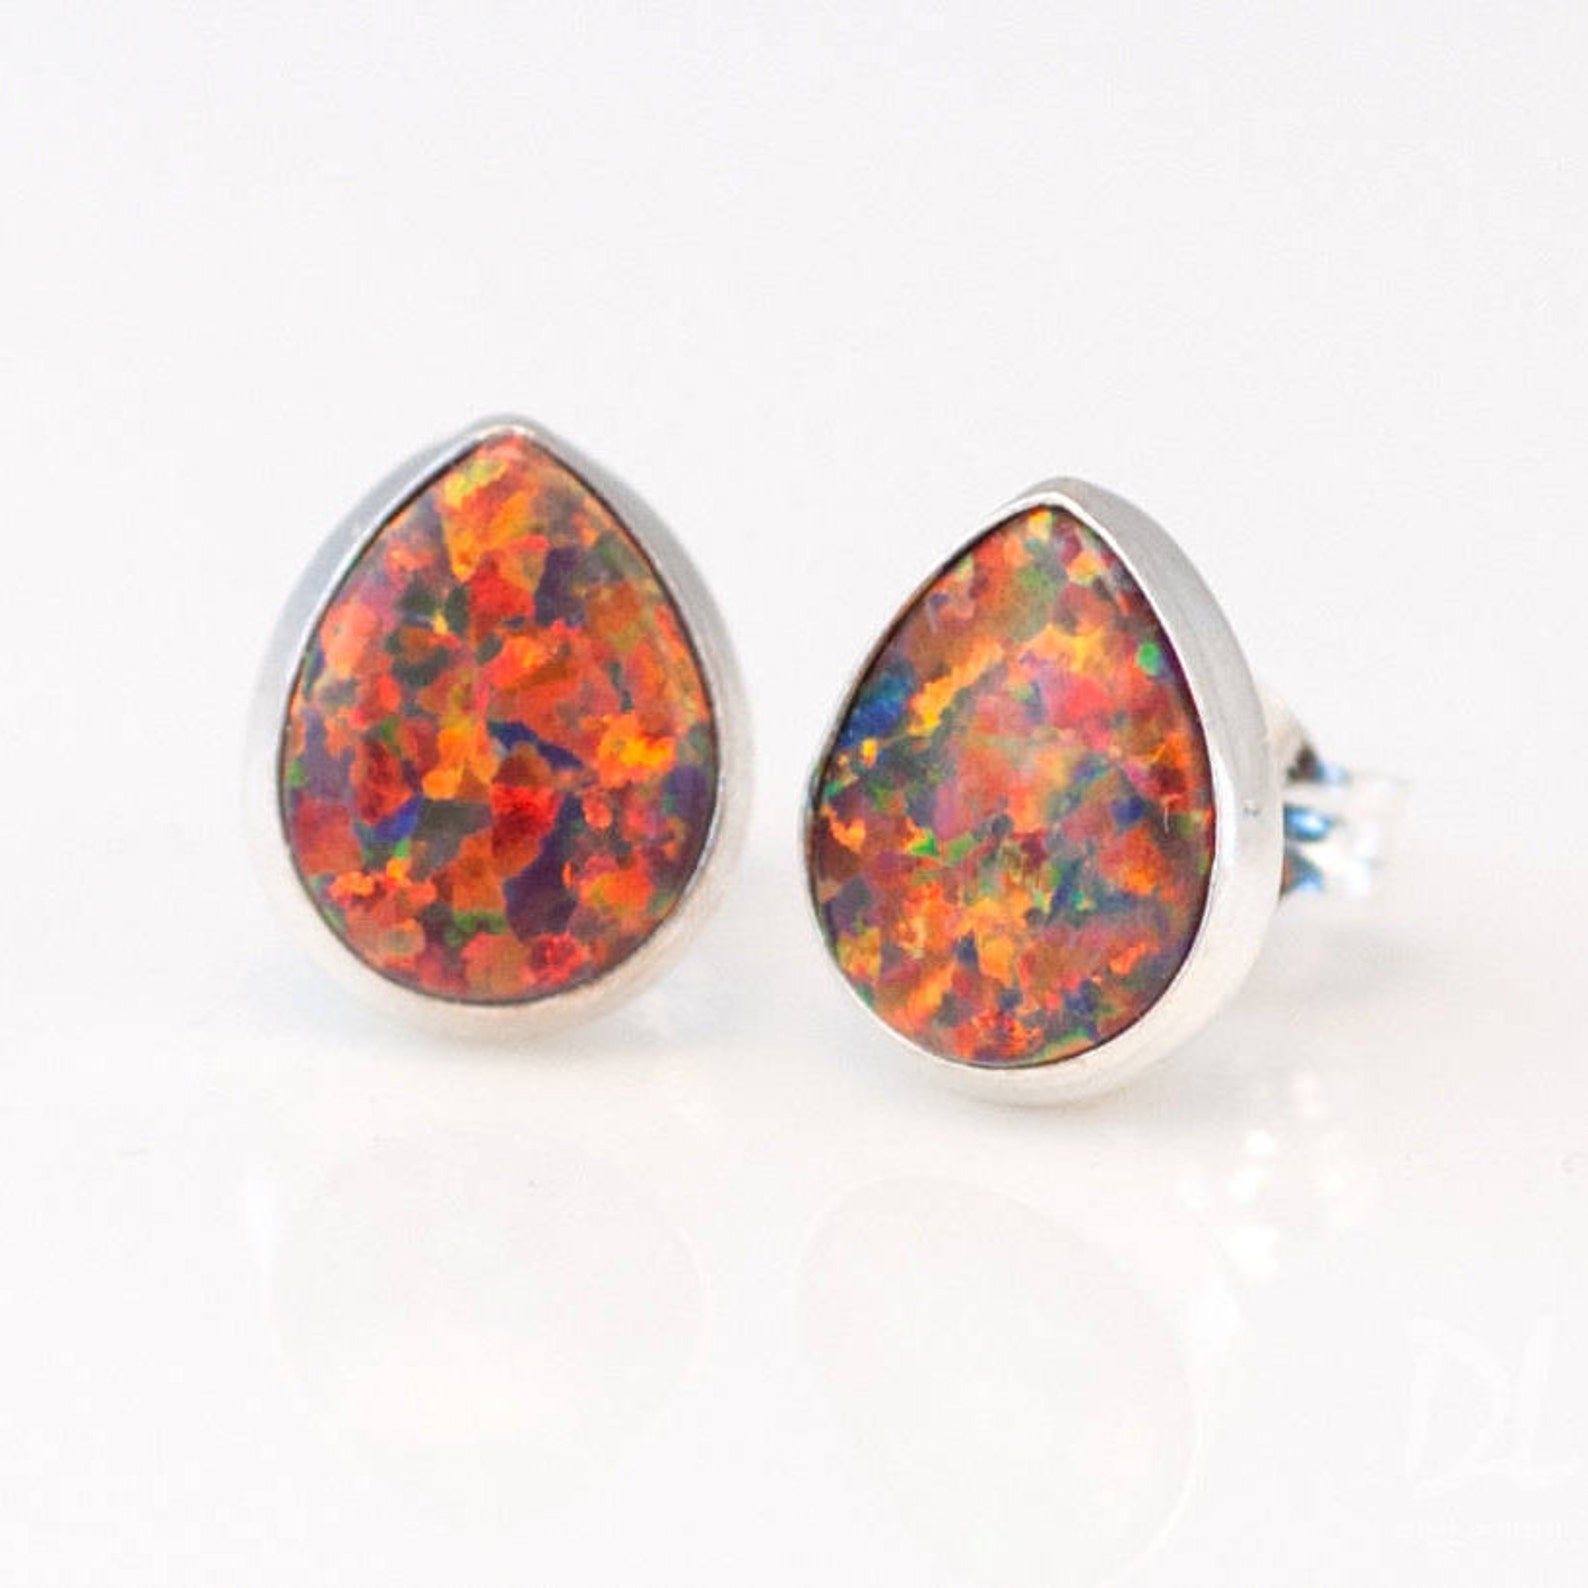 Fire Opal Stud Earrings Sterling Silver Earrings Gemstone Etsy